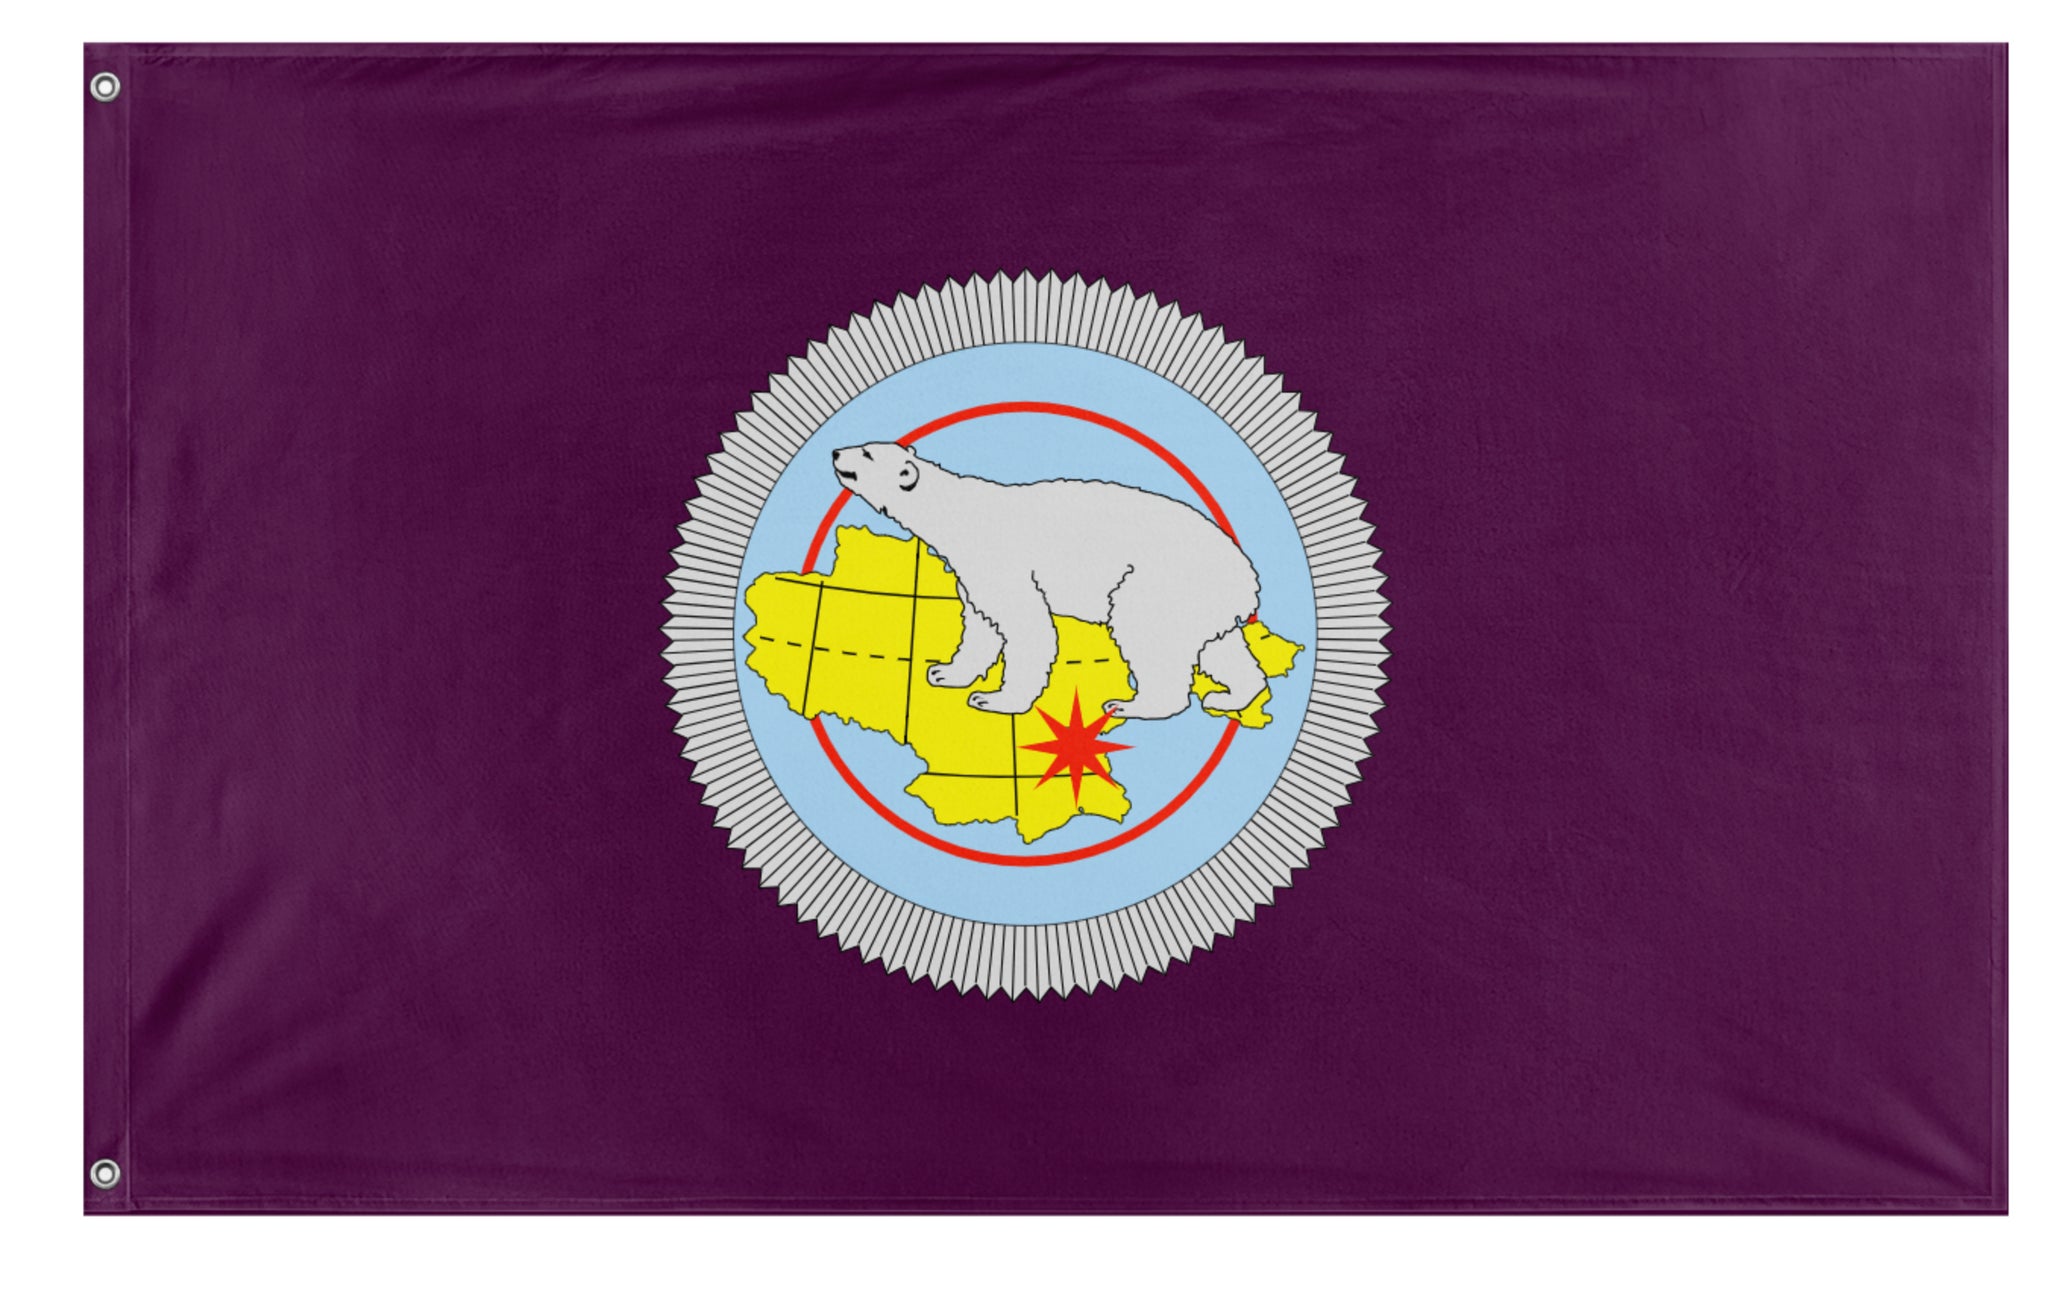 Chukotka Autonomous Okrug flag (Banner of arms) – Flagmaker & Print